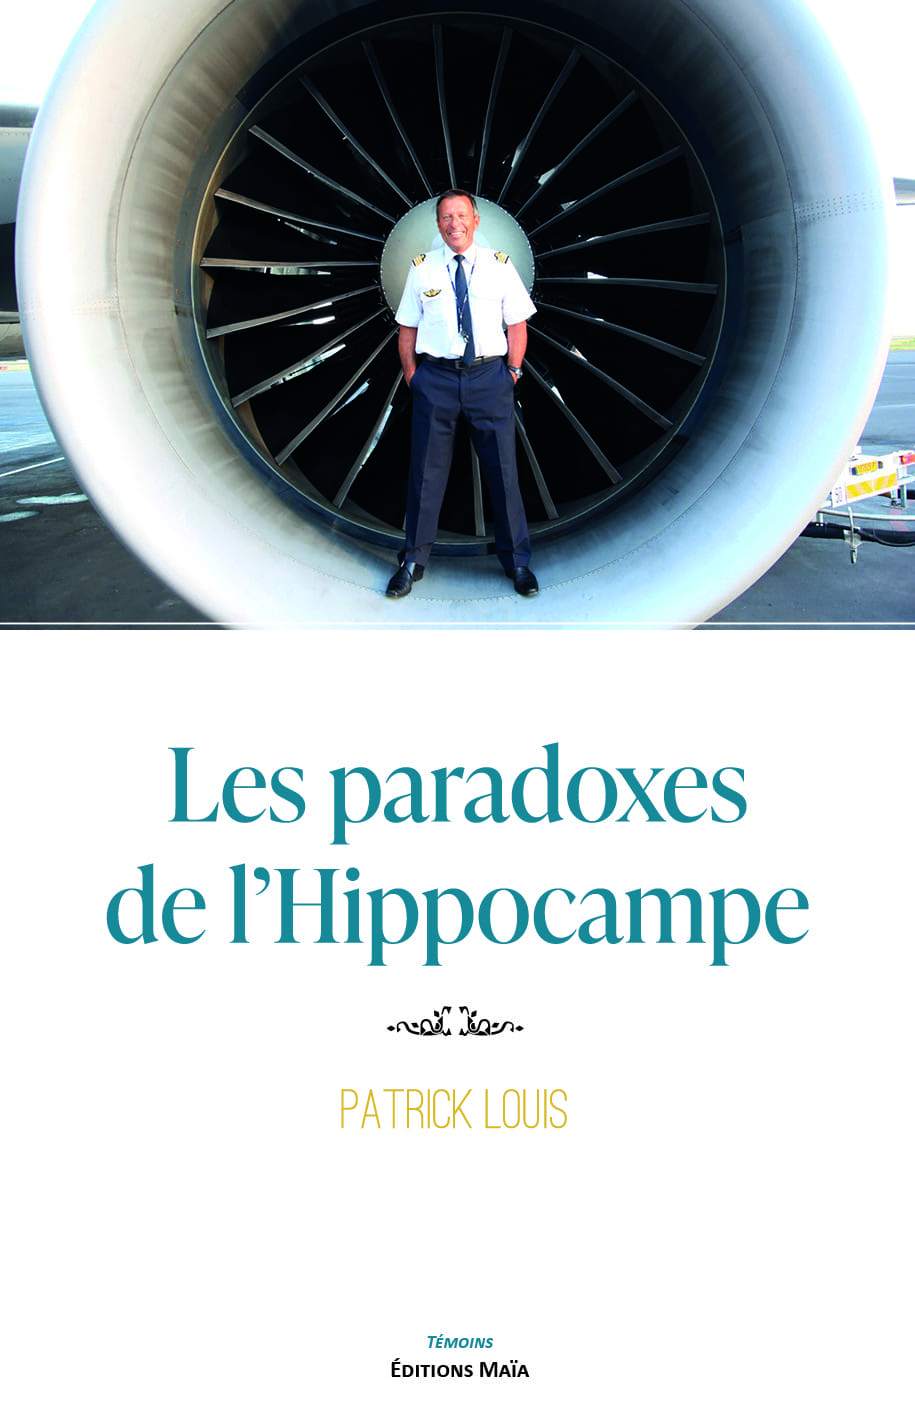 Entretien avec Patrick Louis – Les paradoxes de l’hippocampe